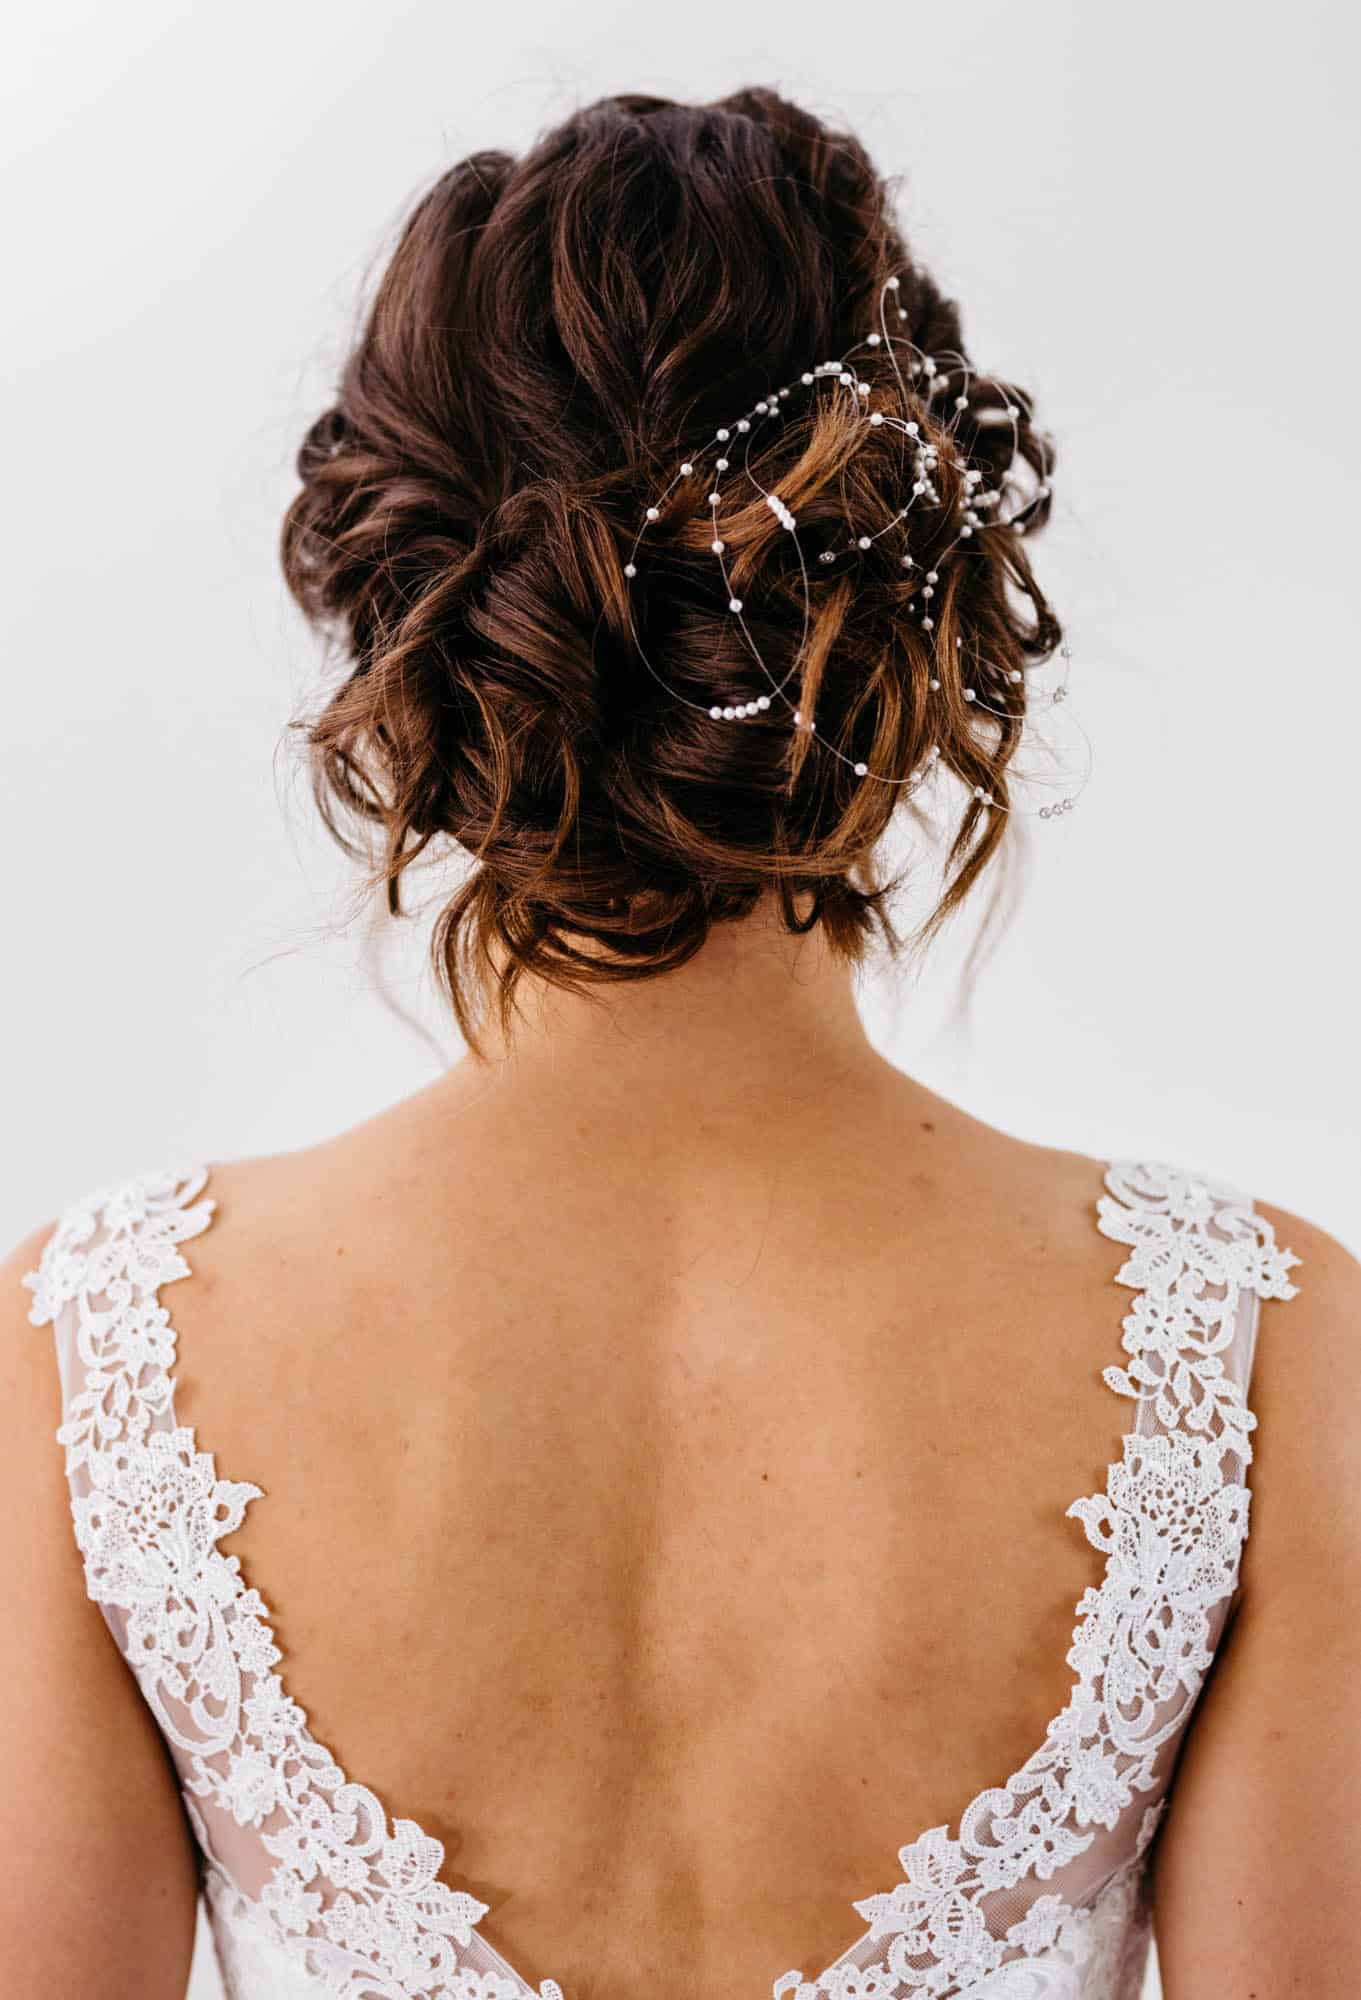     Het achteraanzicht van een vrouw in een trouwjurk met kant en parels, voorzien van prachtige bruidskapsels.